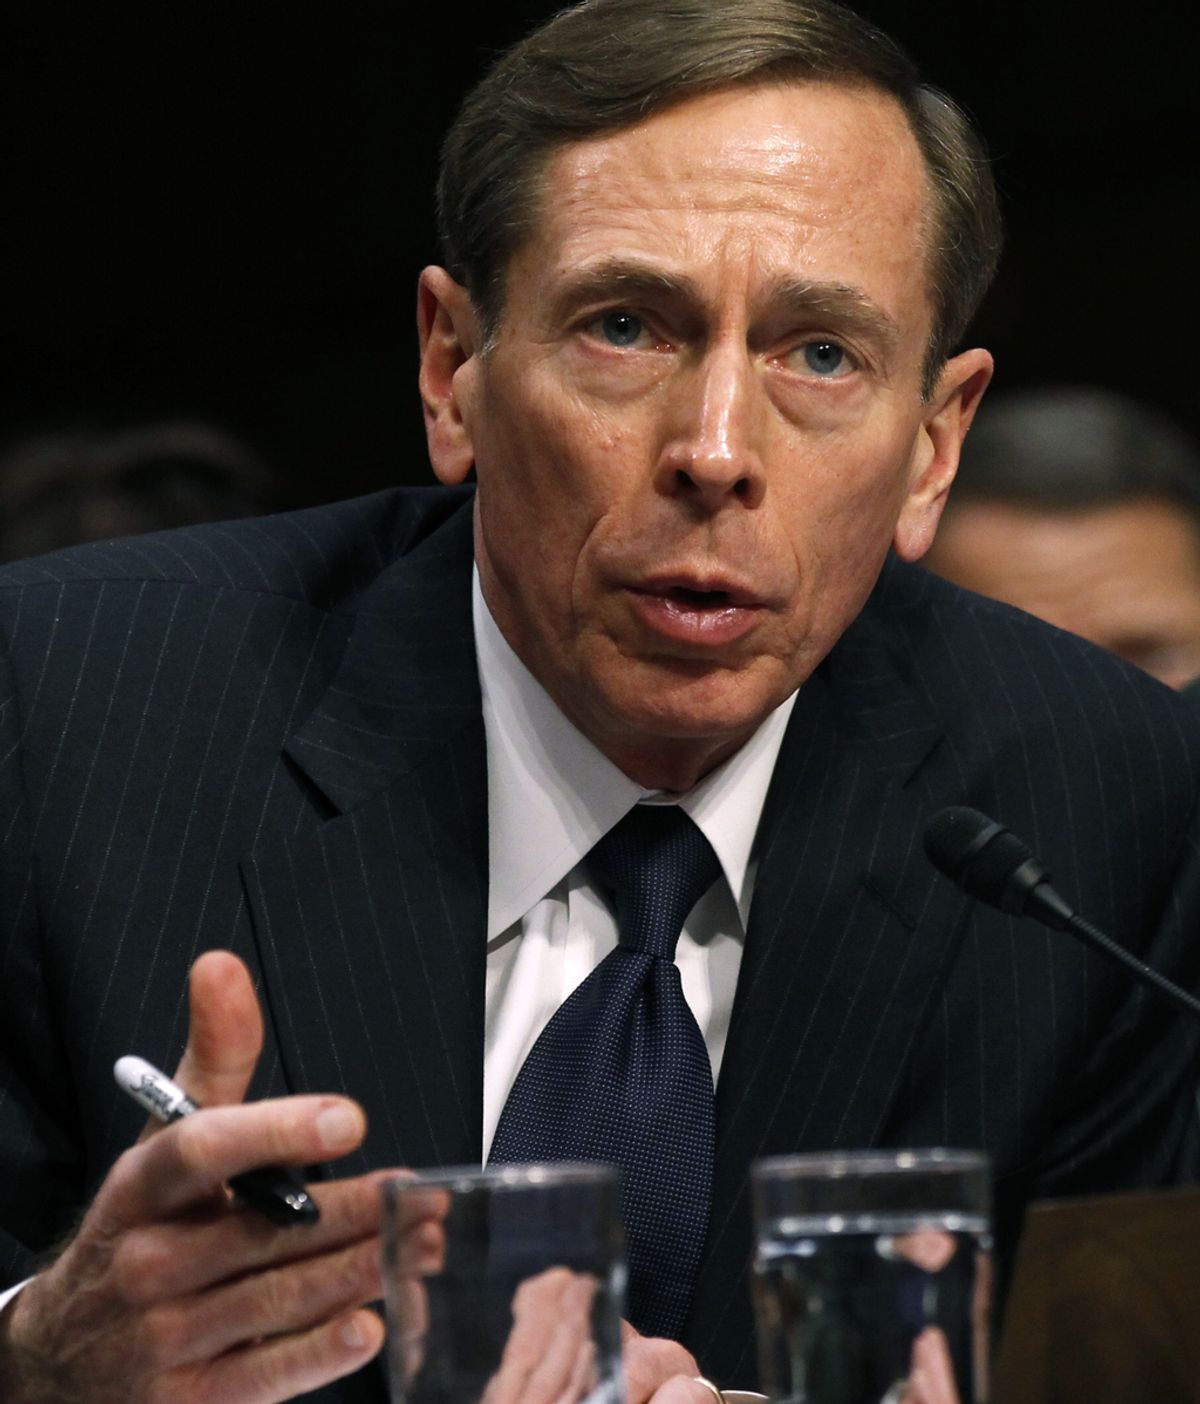 Una investigación del correo de Petraeus a cargo del FBI destapó la relación "extramatrimonial" con su biógrafa